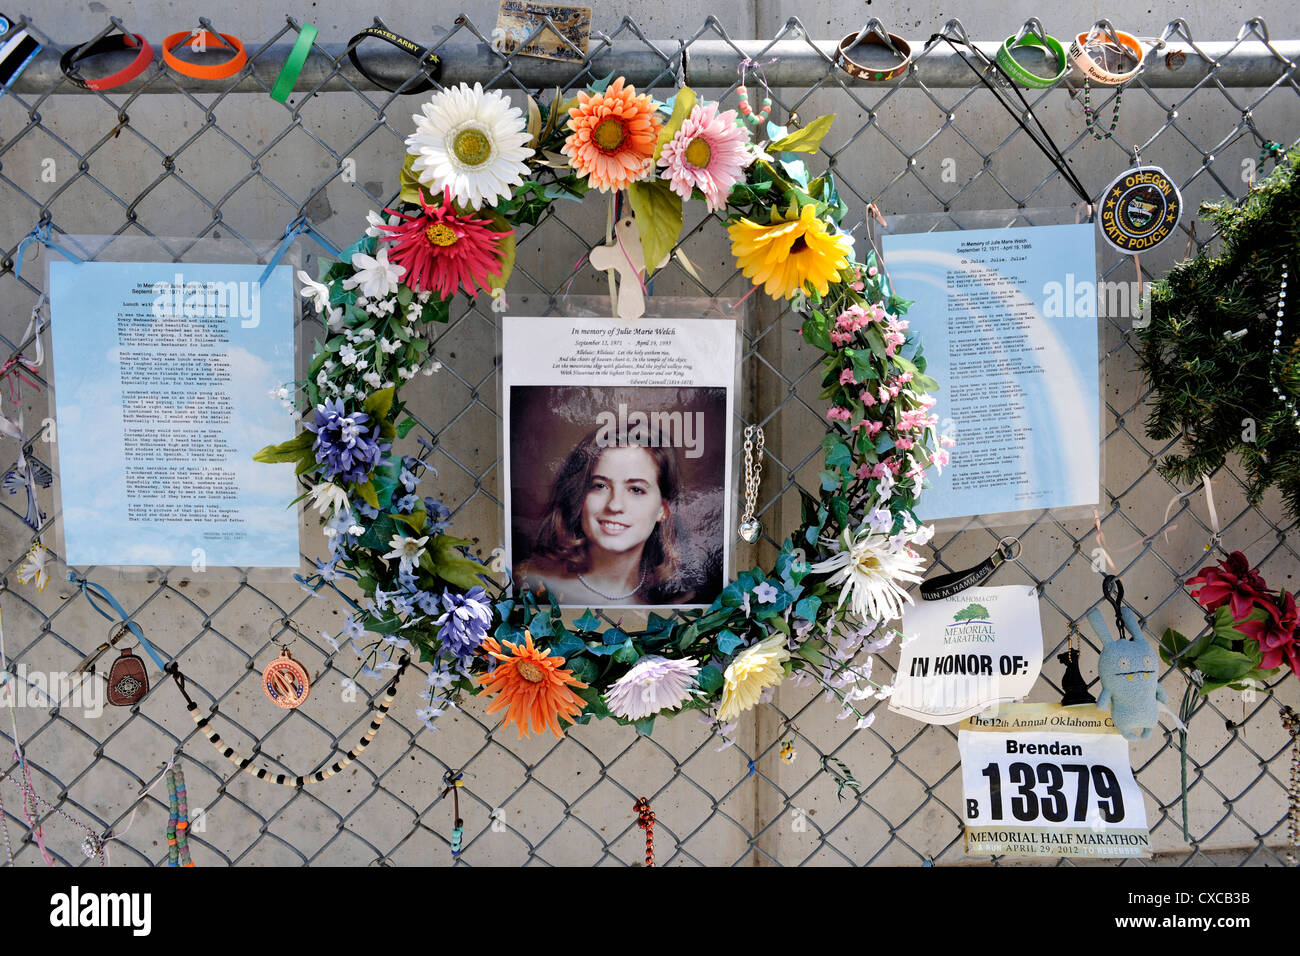 Persönliche Hommage an Julie Marie Walsh, Oklahoma Bombardierung Opfer auf dem Zaun außerhalb der Gedenkstätte Stockfoto